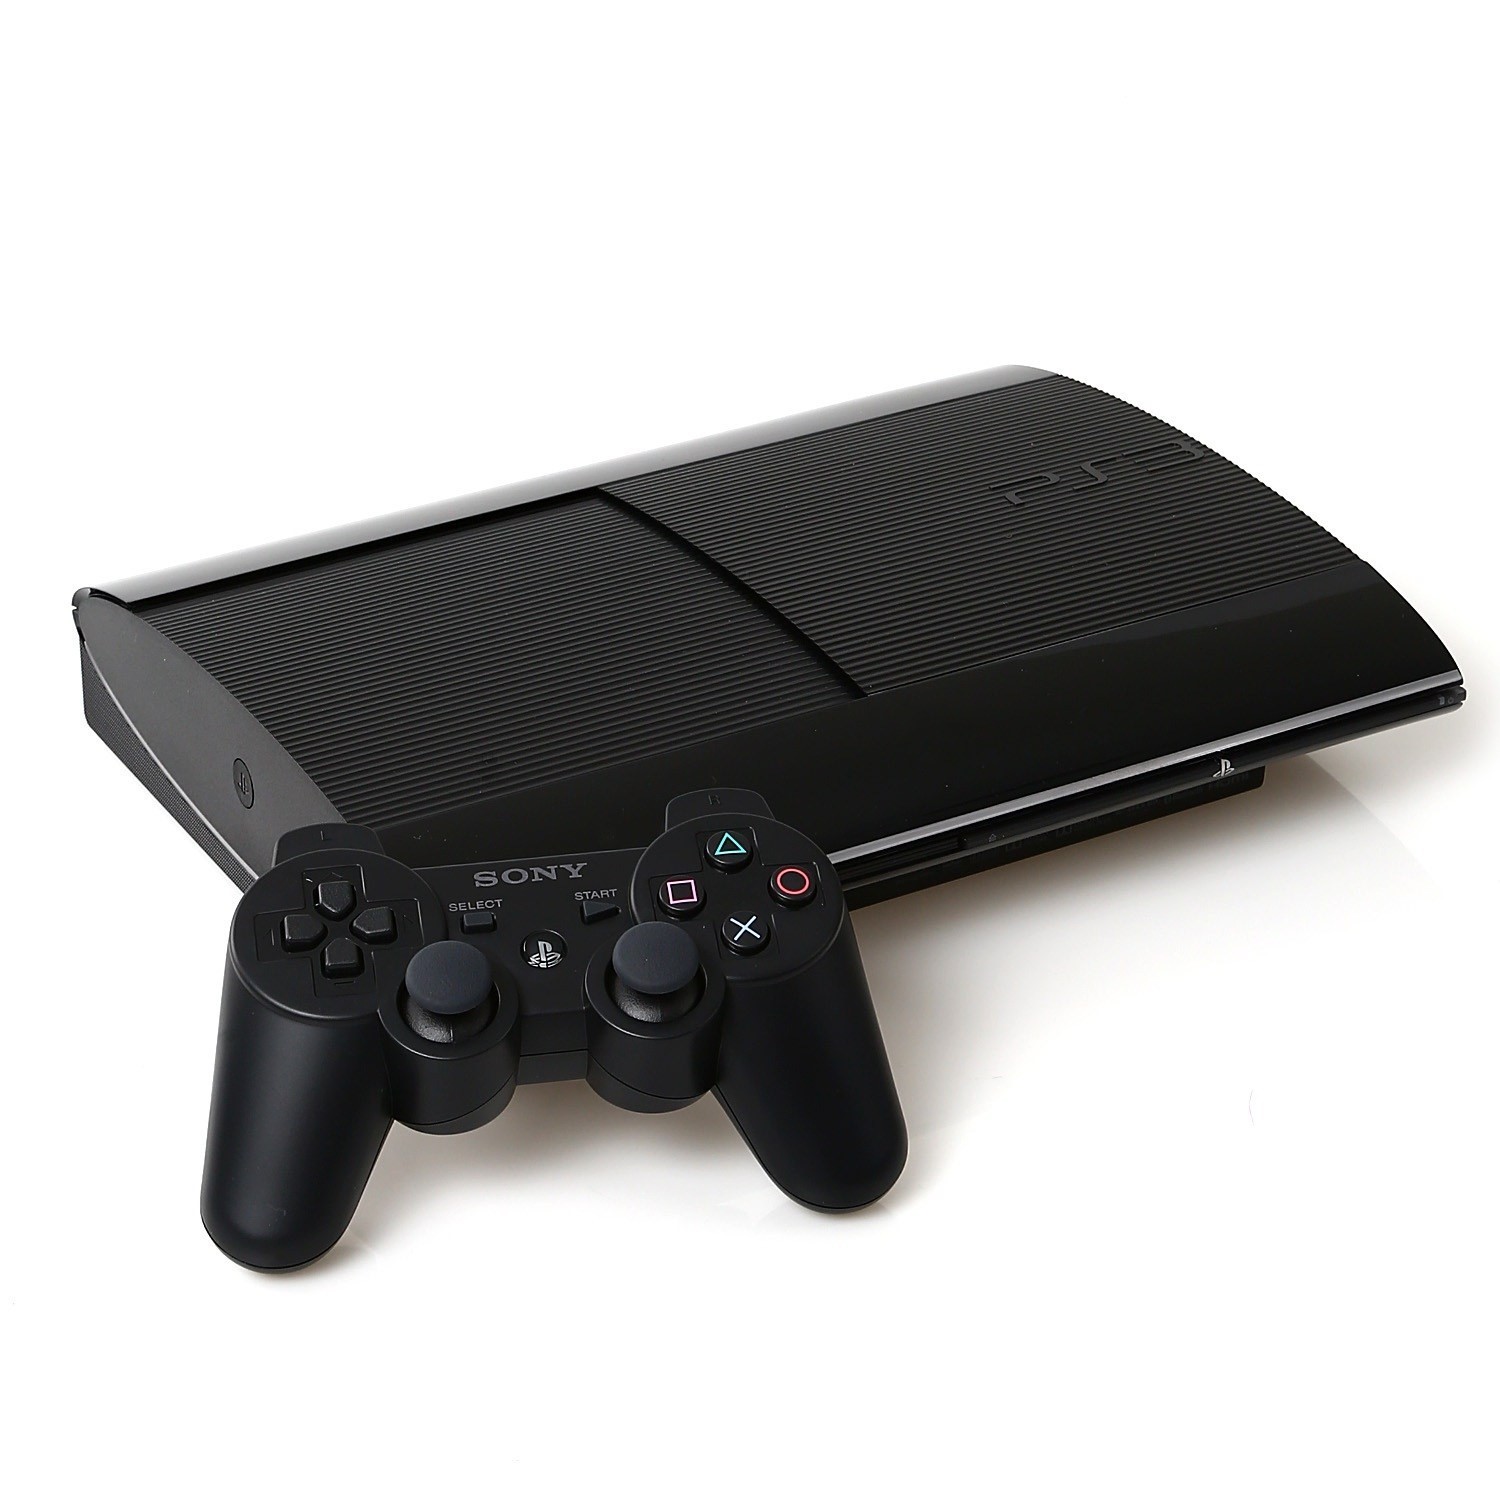 Sony Playstation 3 Super Slim 500 GB 60 Oyun Yüklü Konsol (Teşhir)